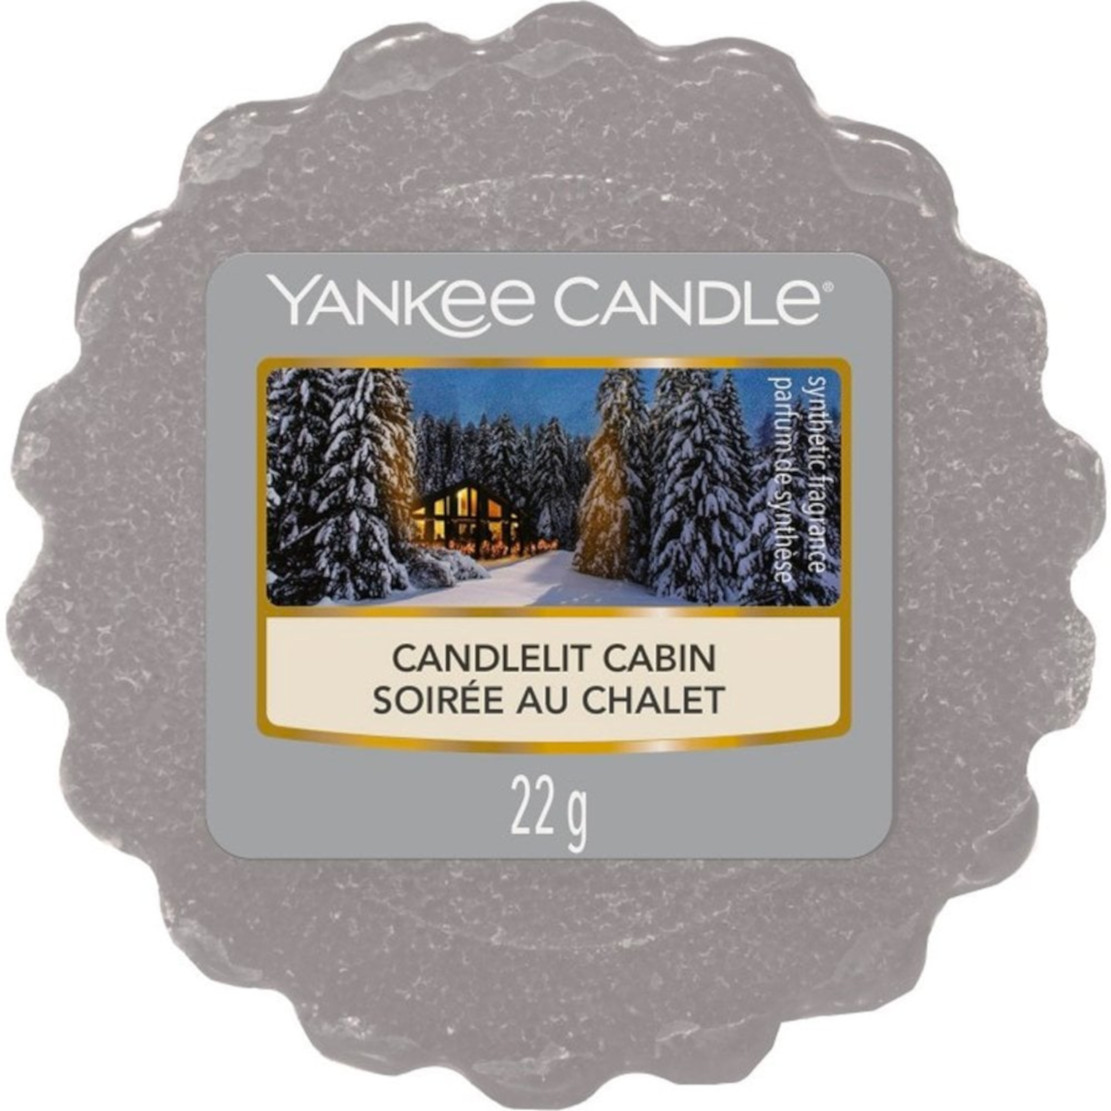 Yankee Candle Candlelit Cabin Wax Melt Tart